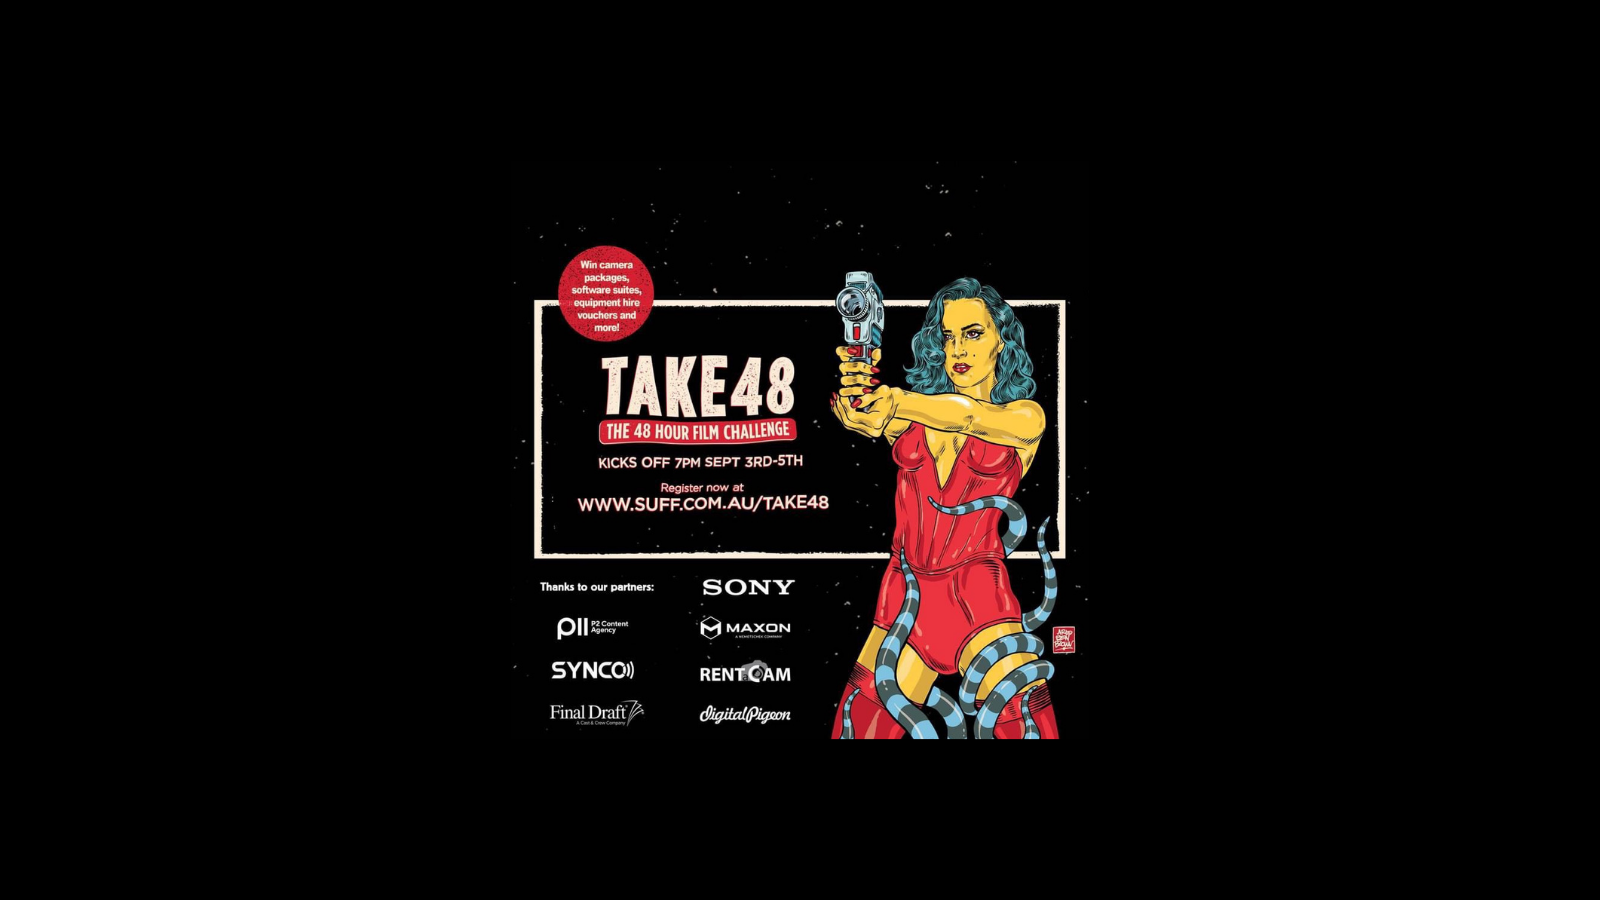 Take 48 Sydney Underground Film Festival